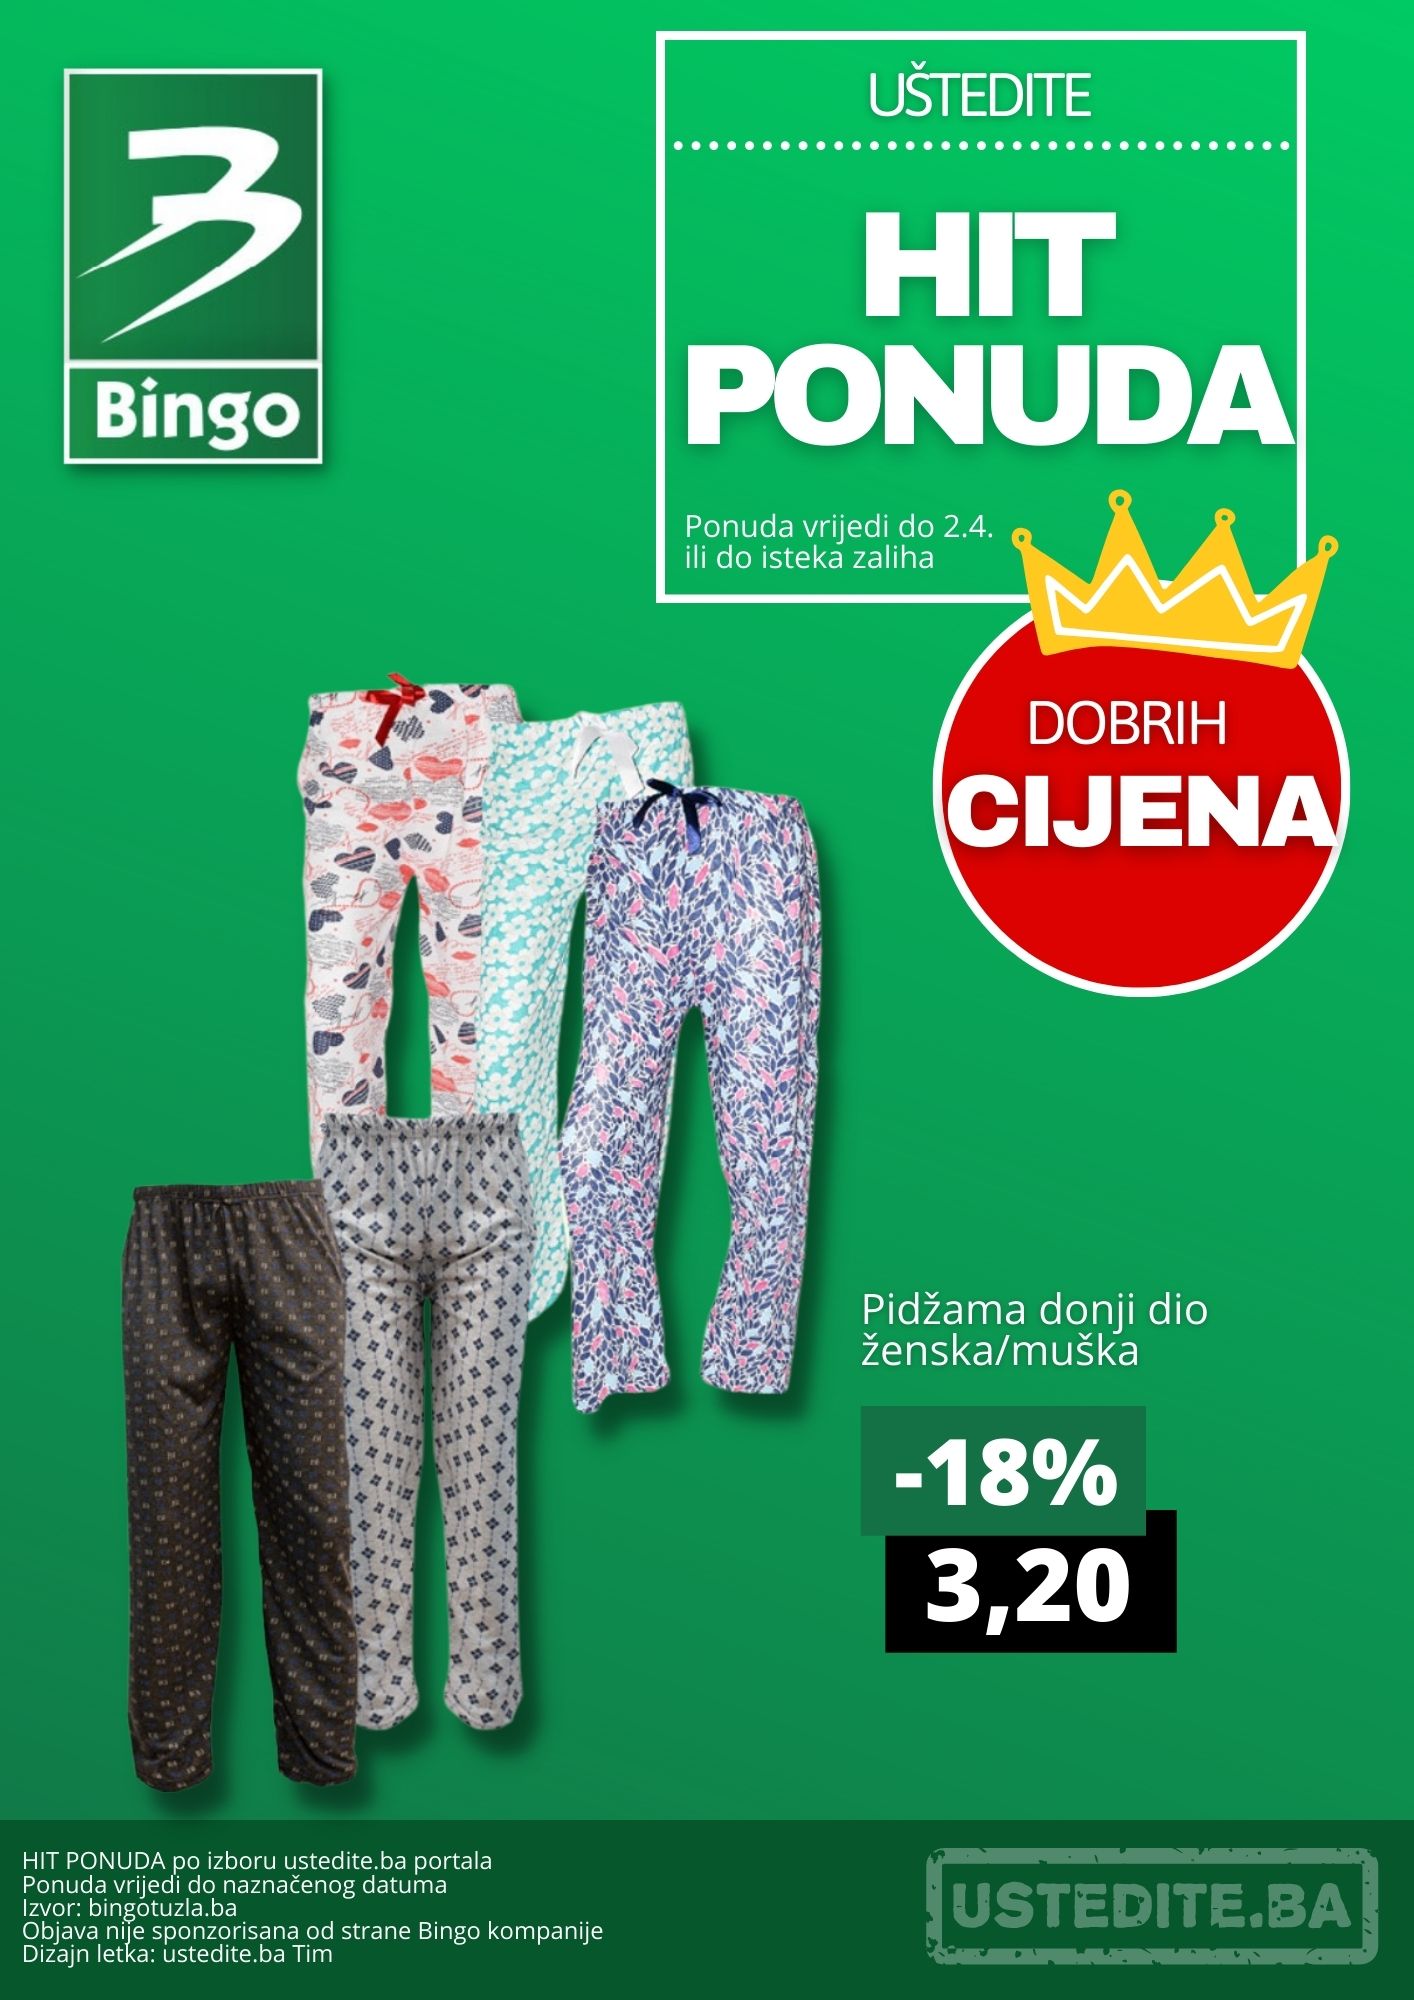 Bingo HIT PONUDA - Kralj dobih cijena 